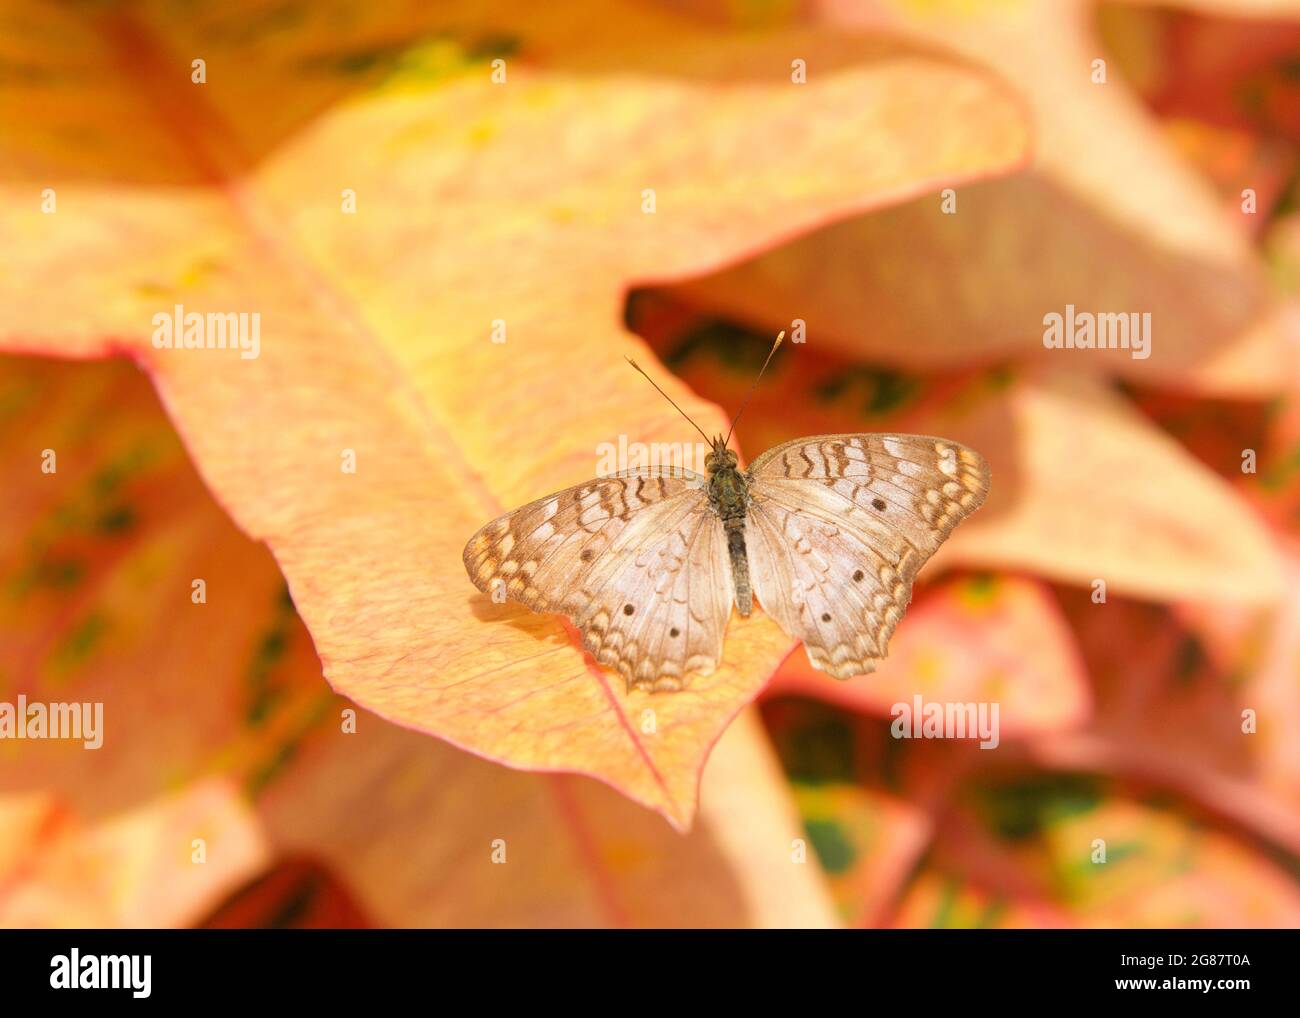 farfalla bianca di pavone poggiata su foglie arancioni e gialle vibranti, quasi mescolandosi sullo sfondo. Foto Stock